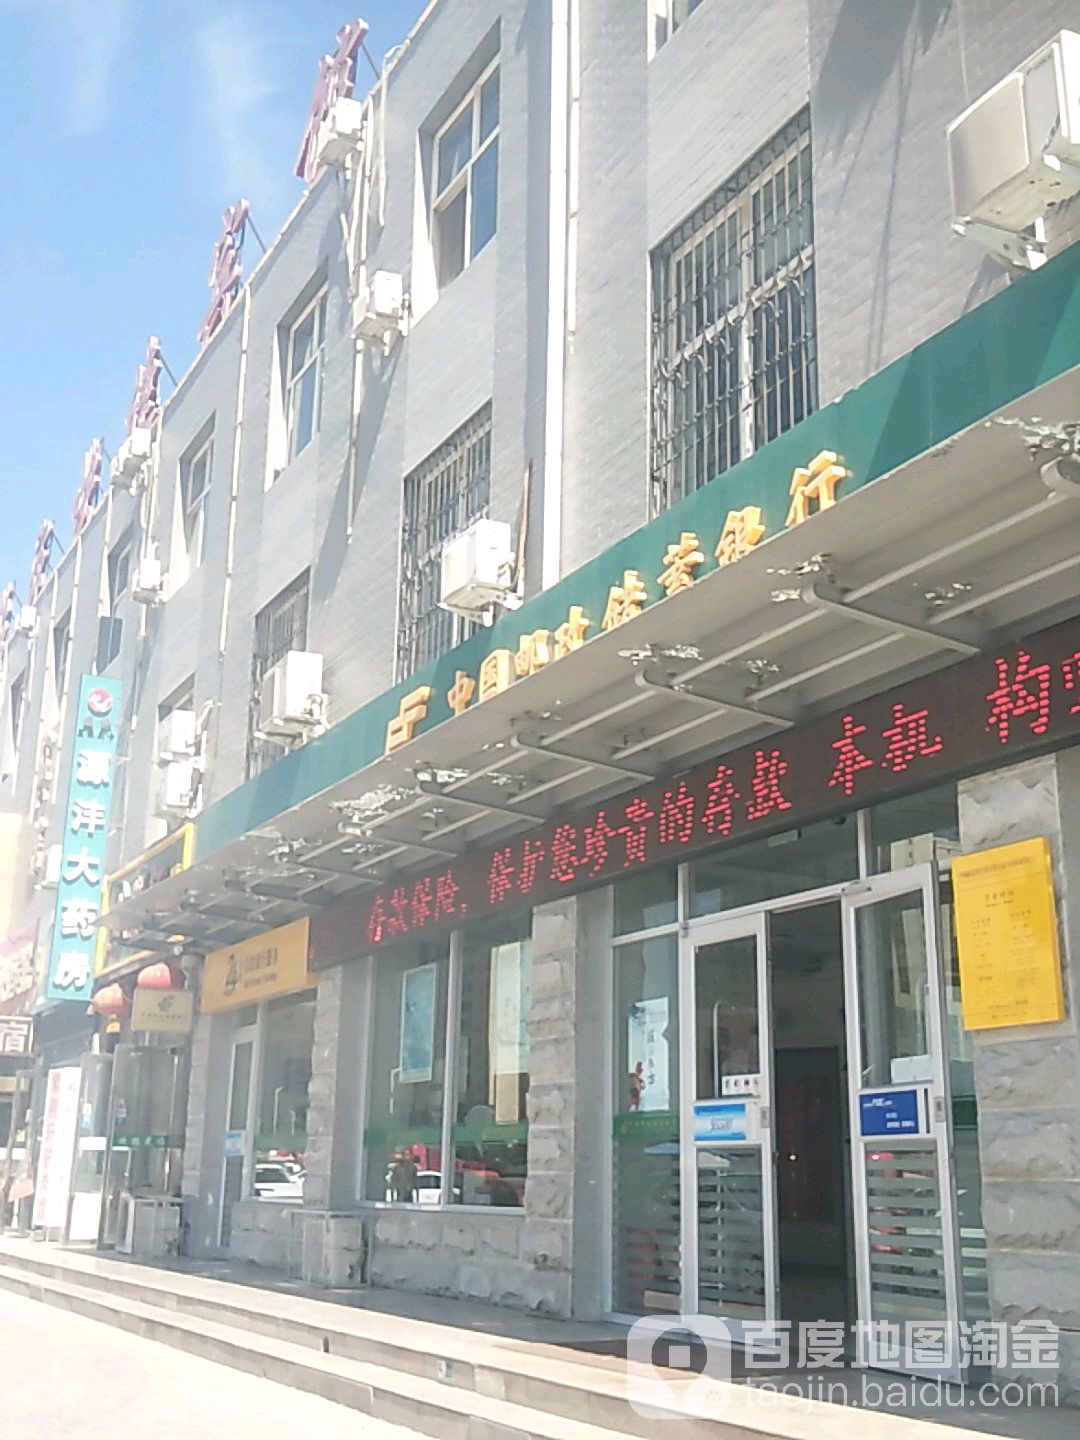 中国邮政储蓄银行(银川市国际商贸城支行)